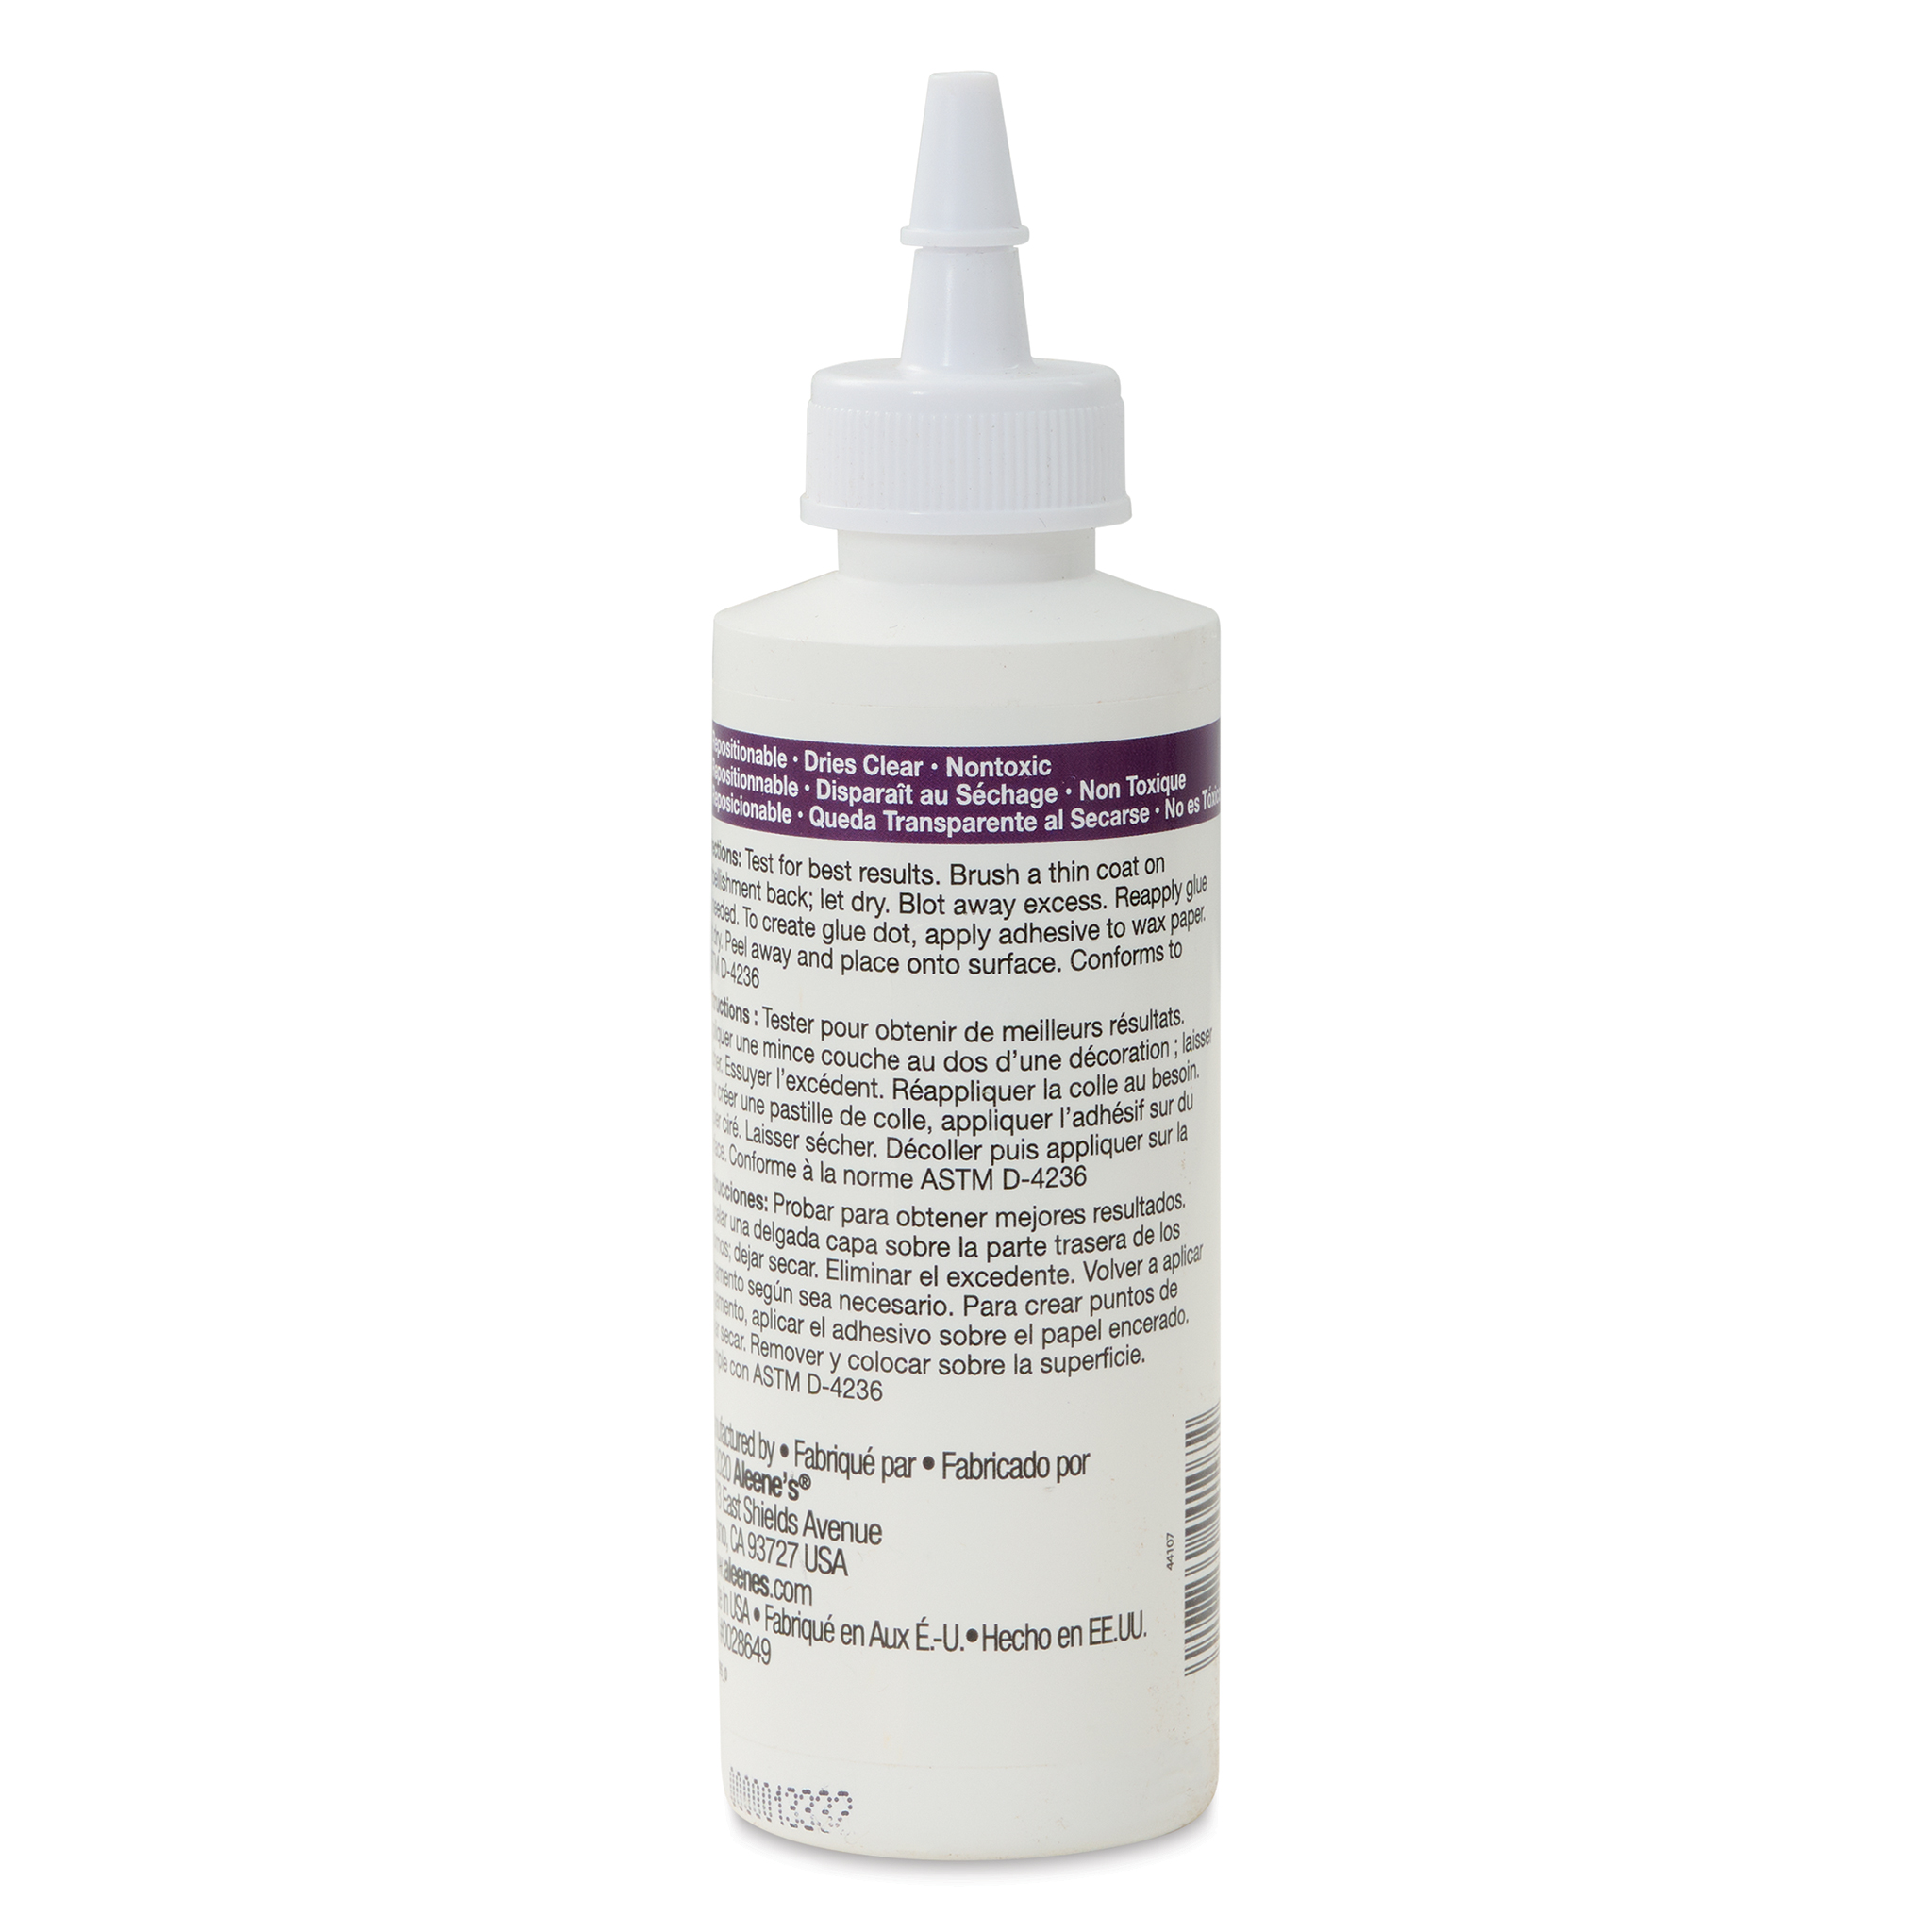 Aleene's Original Glues - Aleenes Repositionable Tacky Spray